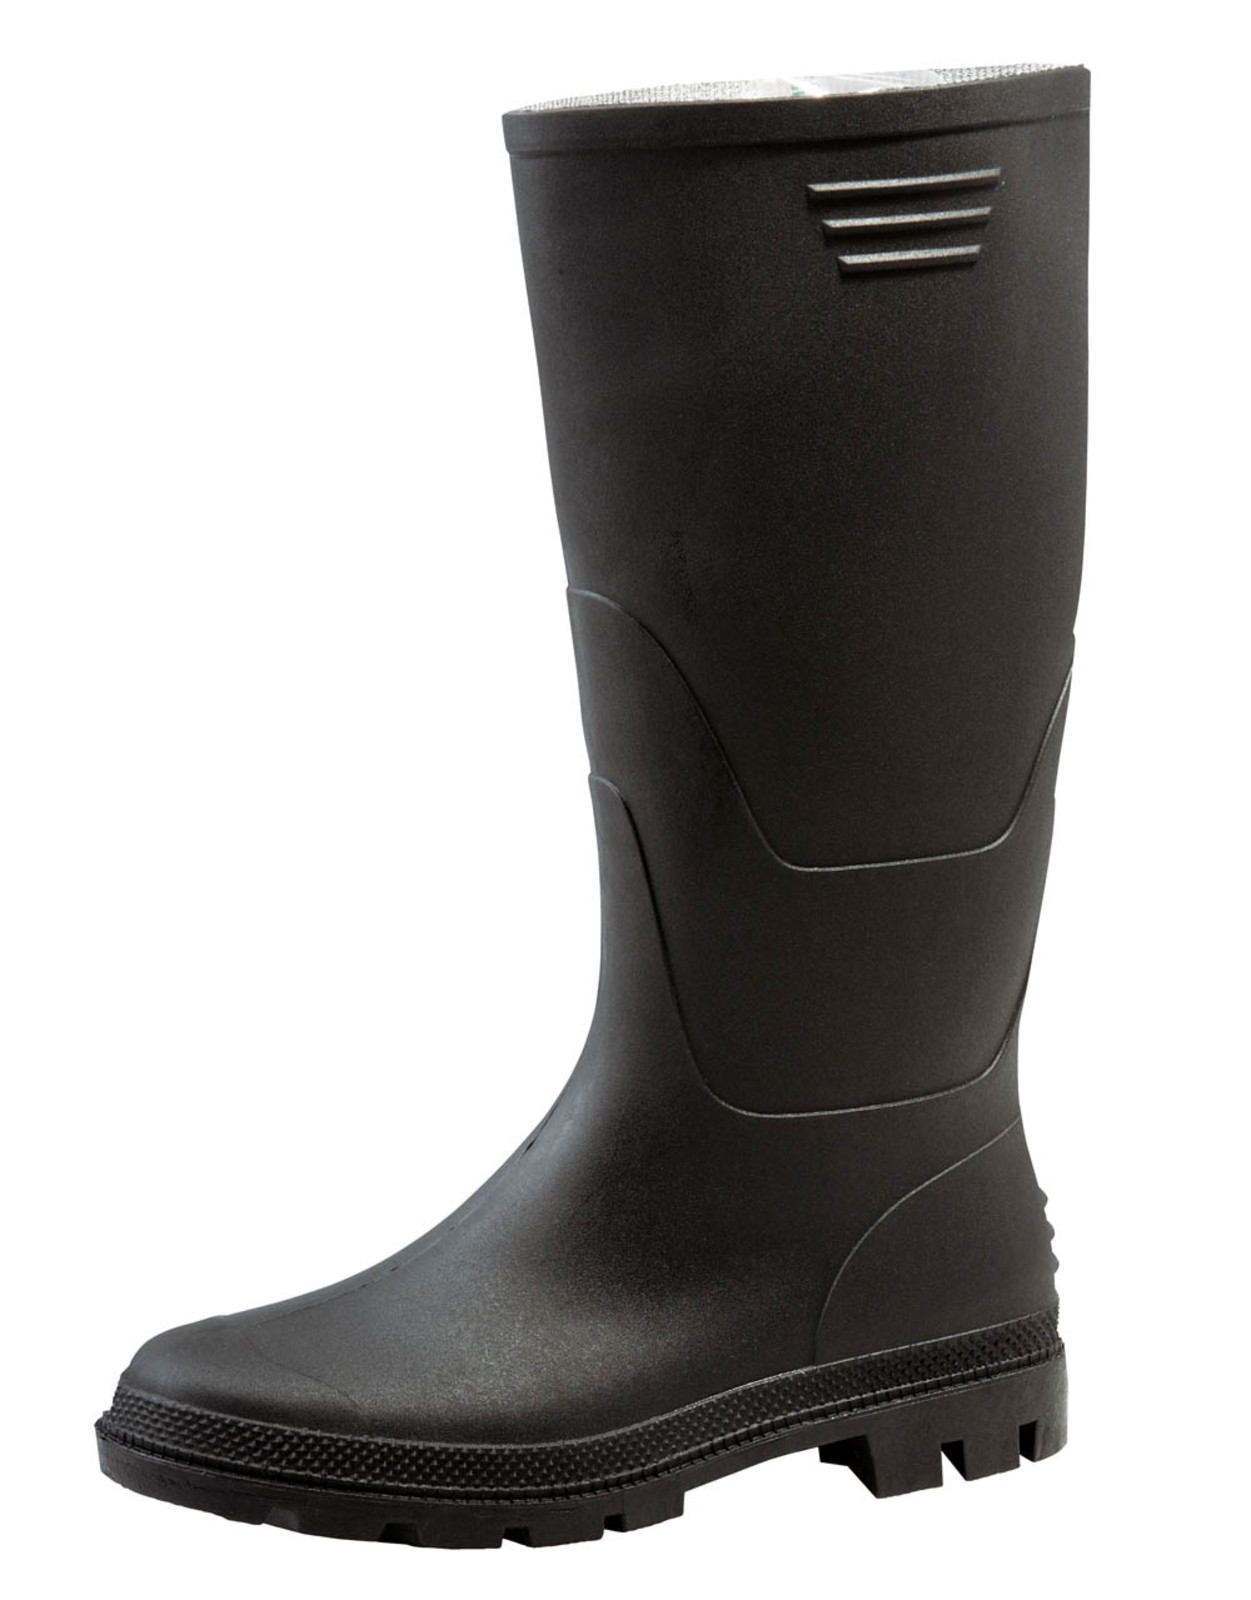 Gumáky Boots Ginocchio PVC - veľkosť: 47, farba: čierna